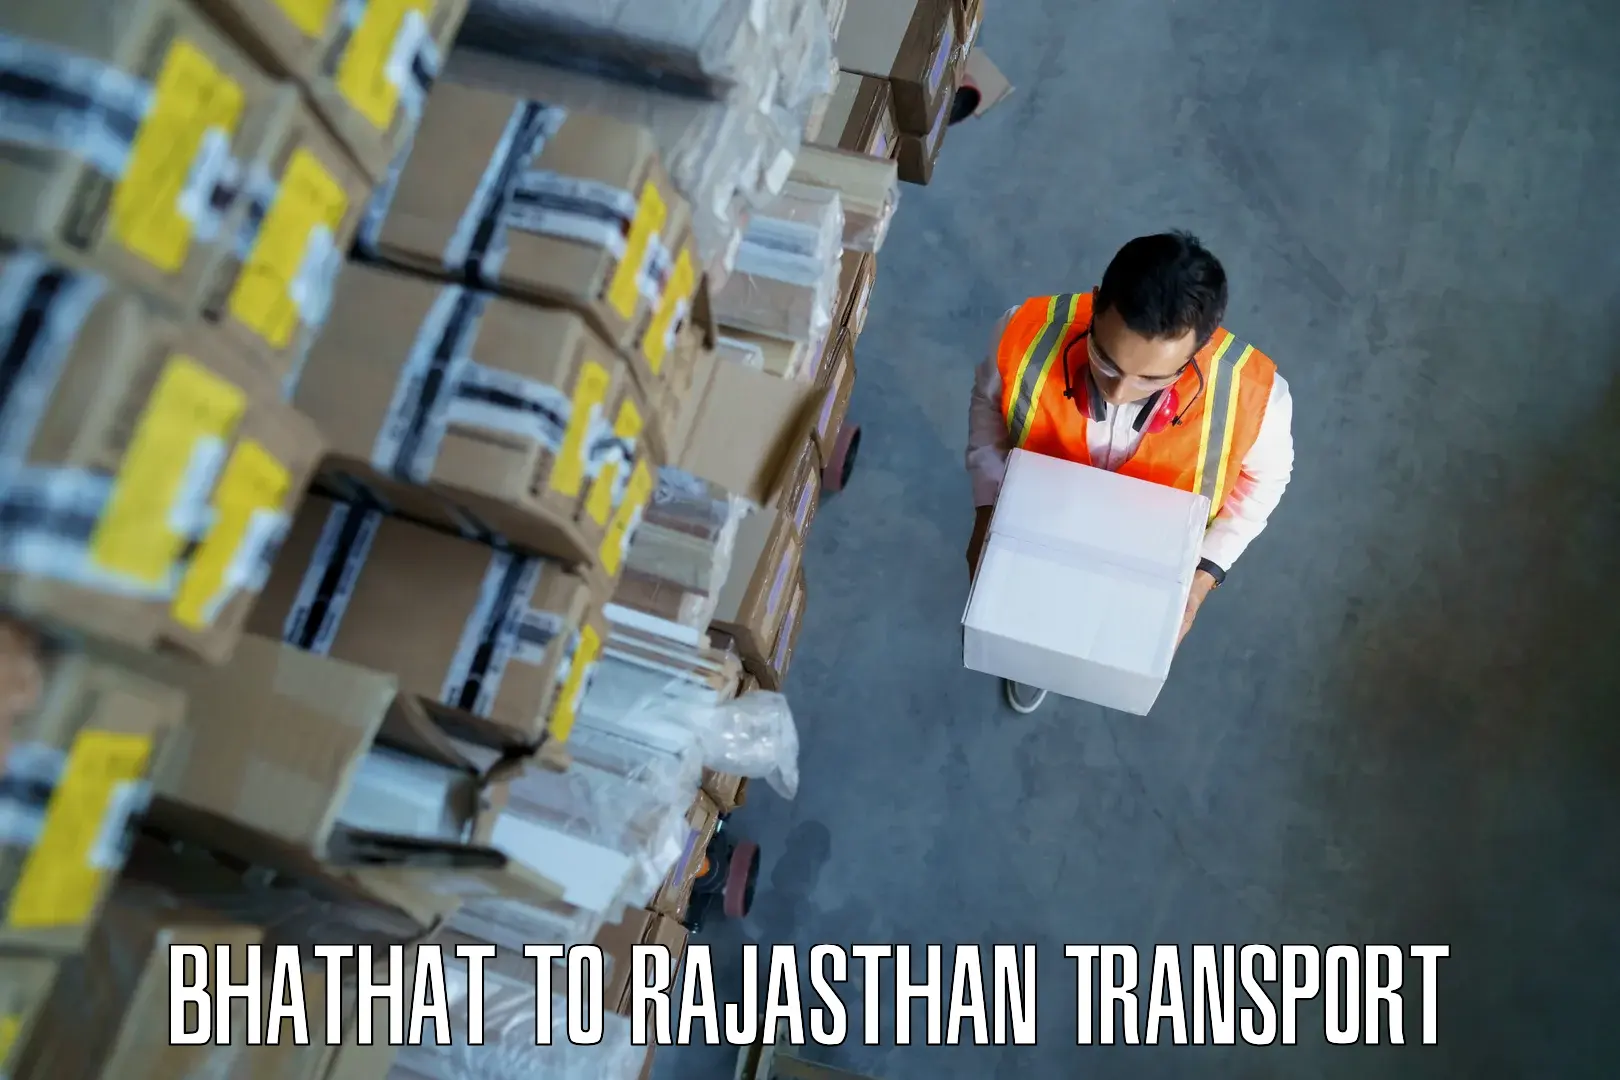 Cargo train transport services Bhathat to Gotan